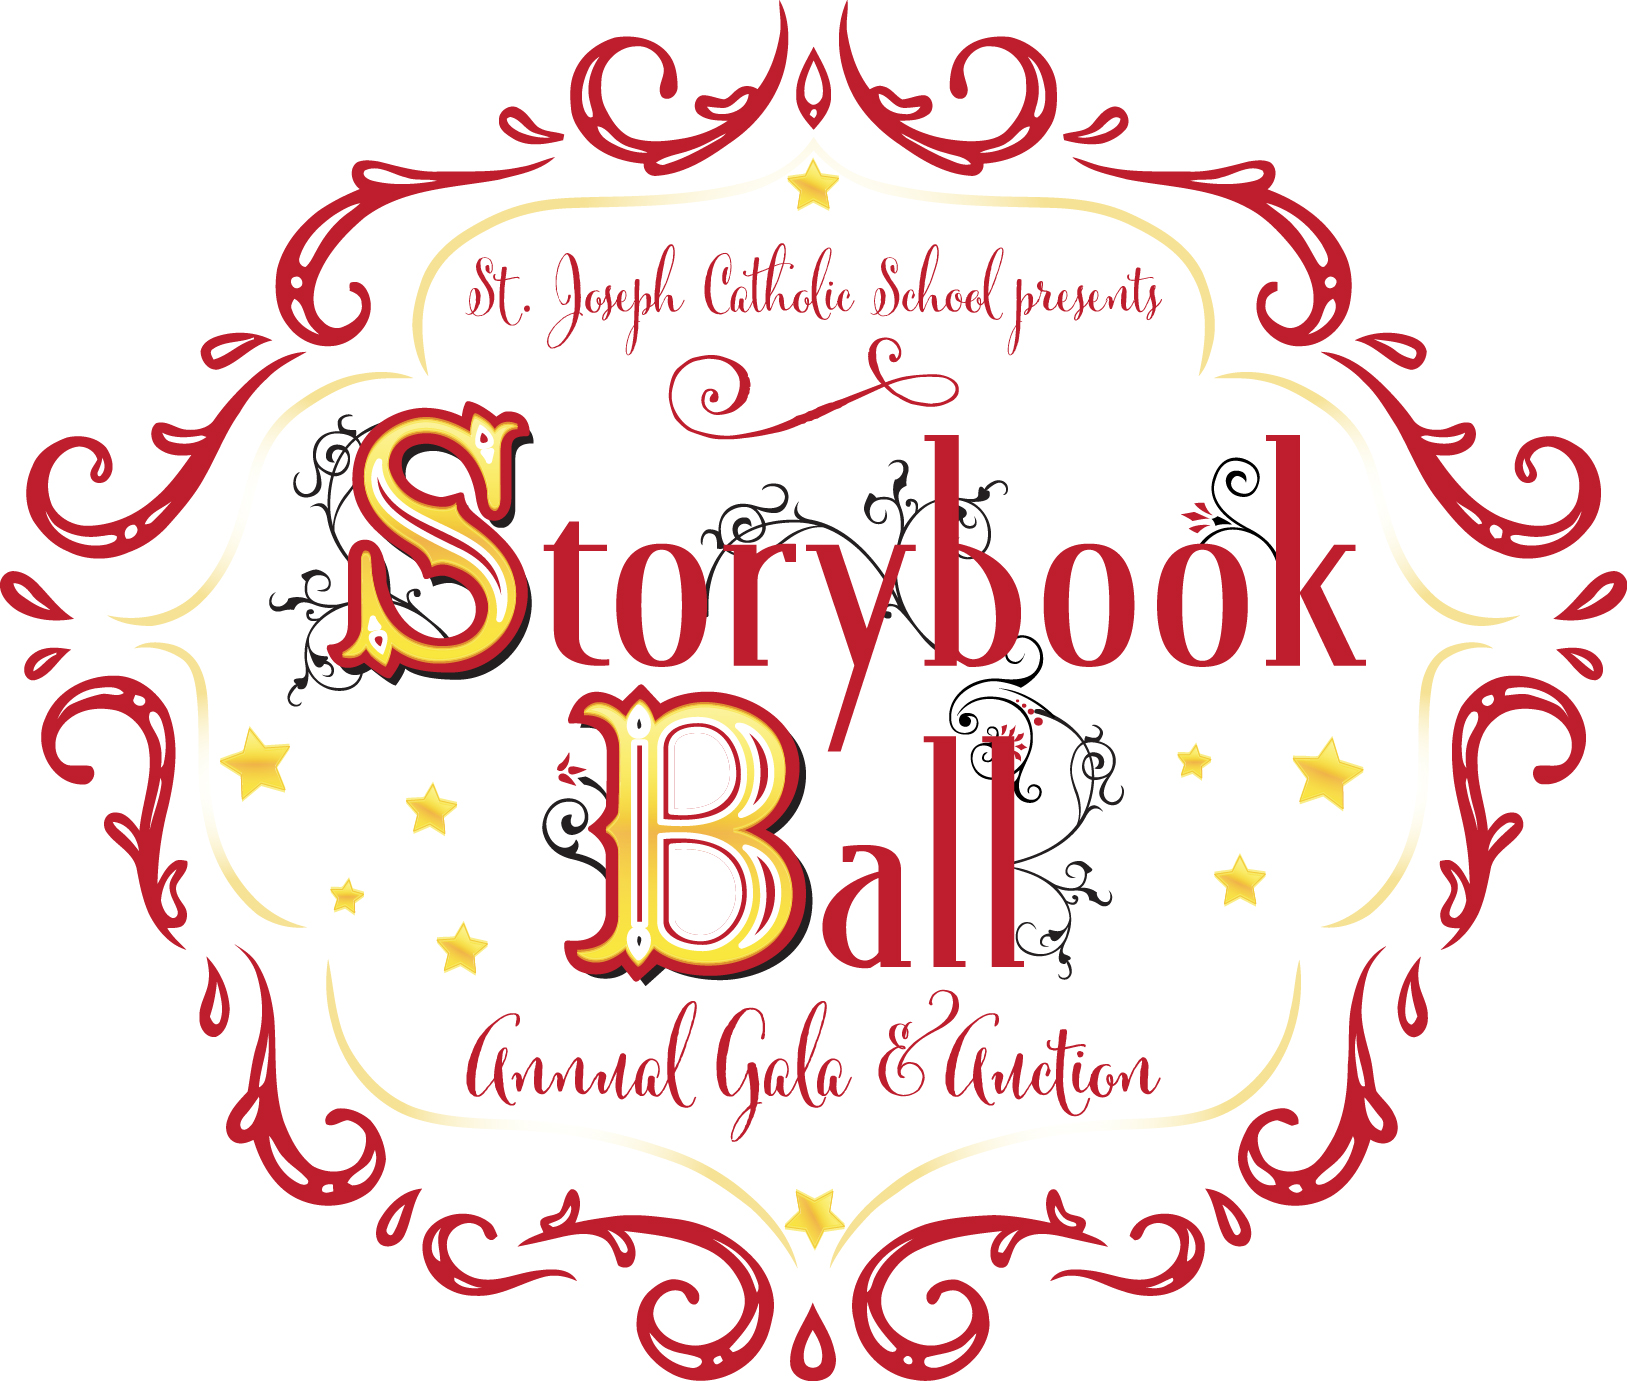 Storybook Ball circle logo 